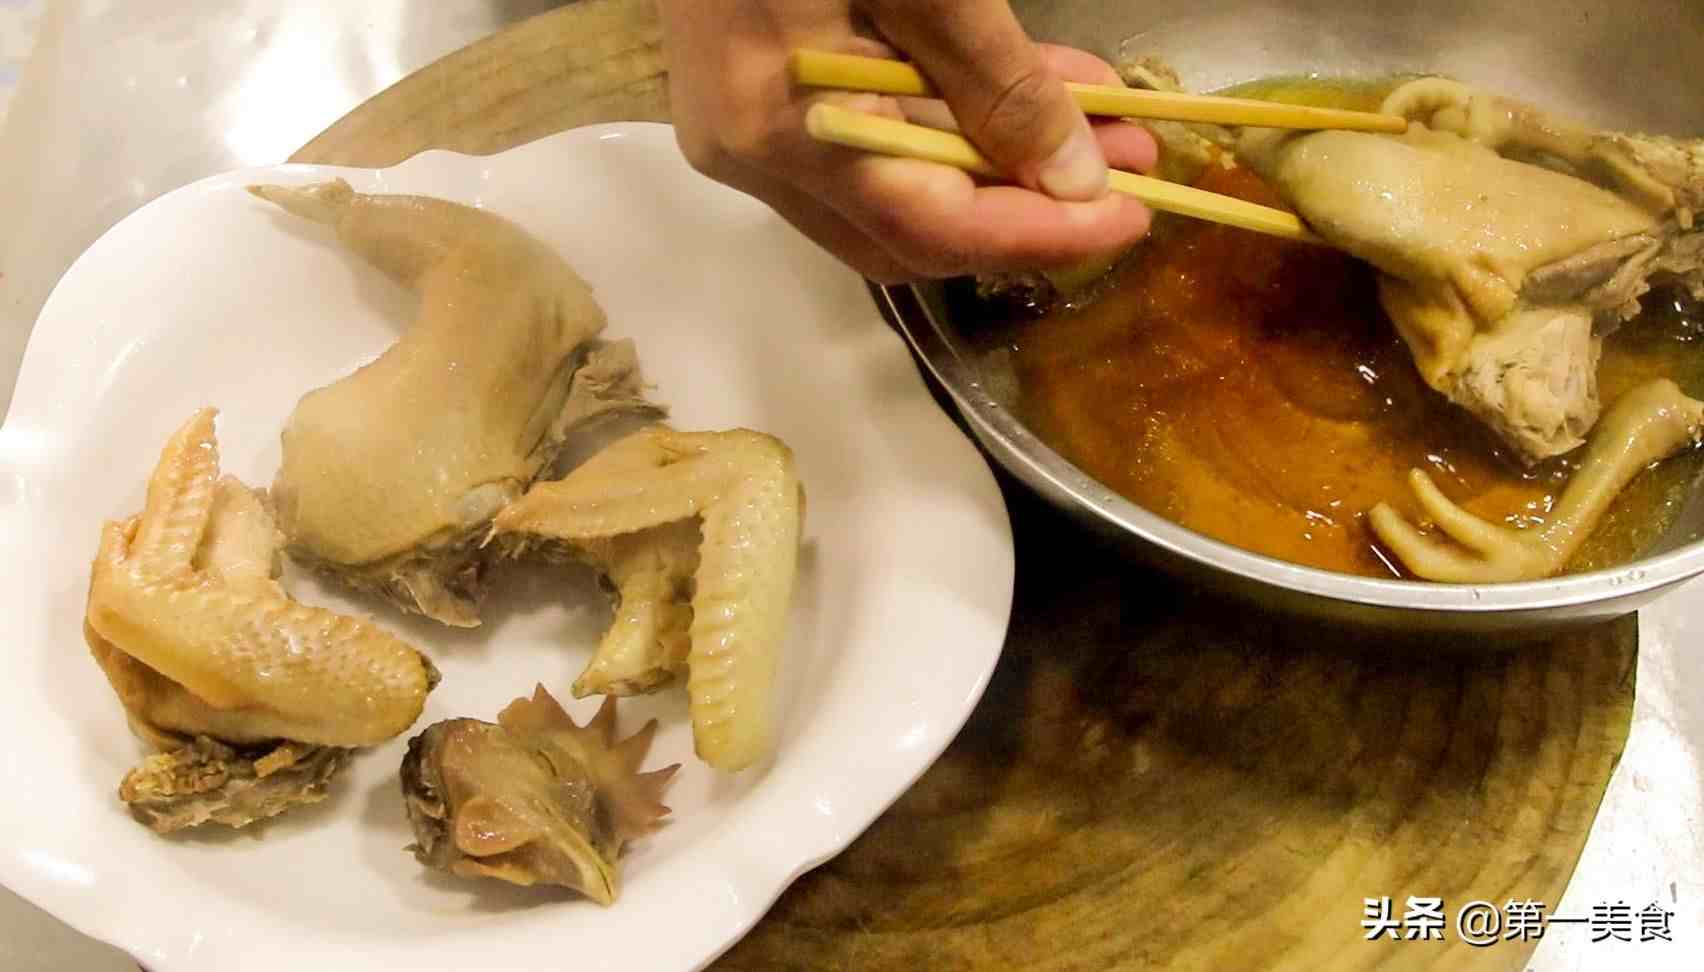 厨师长分享家常清蒸鸡做法，鸡肉爽滑细腻无腥味，营养价值高